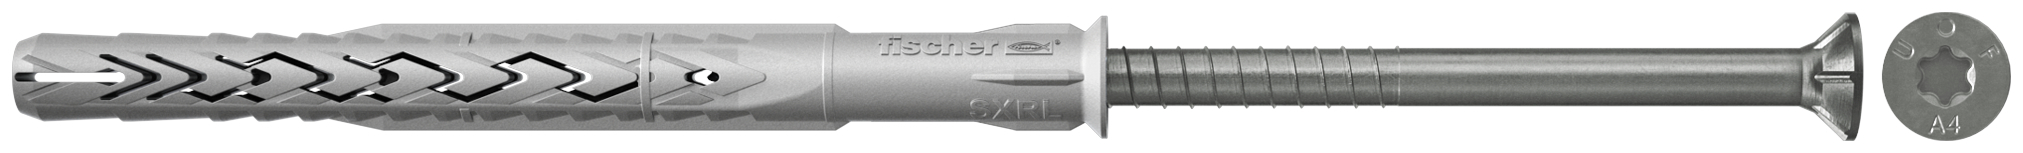 fischer Tasselli prolungati SXRL 10X200 T A4 (1 Pz.) Tassello prolungato in nylon con marcatura CE con vite premontata in acciaio inox A4, T.S.P. impronta torx.